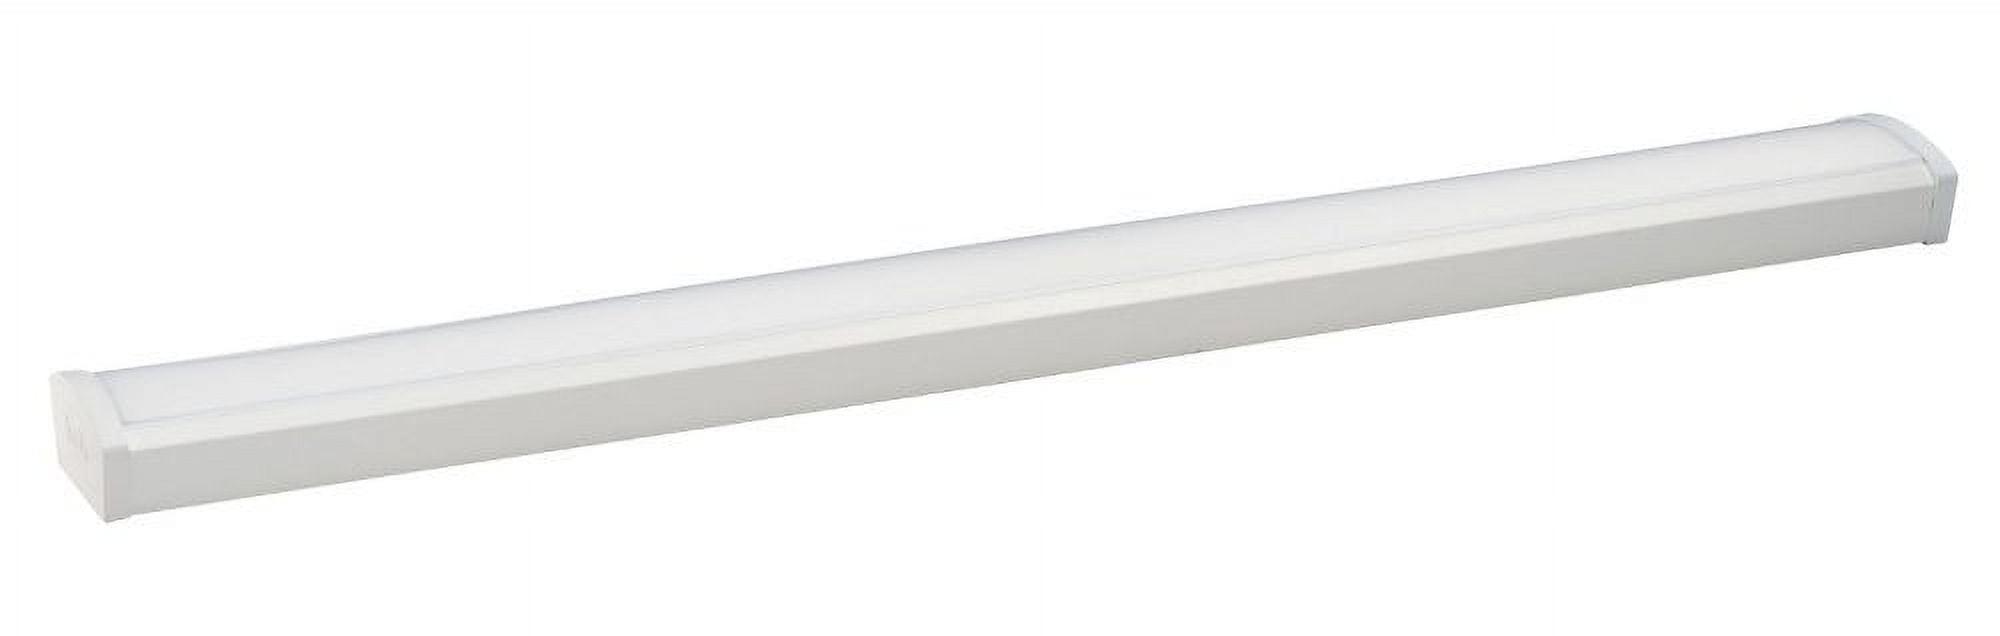 Sleek White Energy-Efficient LED Ceiling Wrap Light, 48"